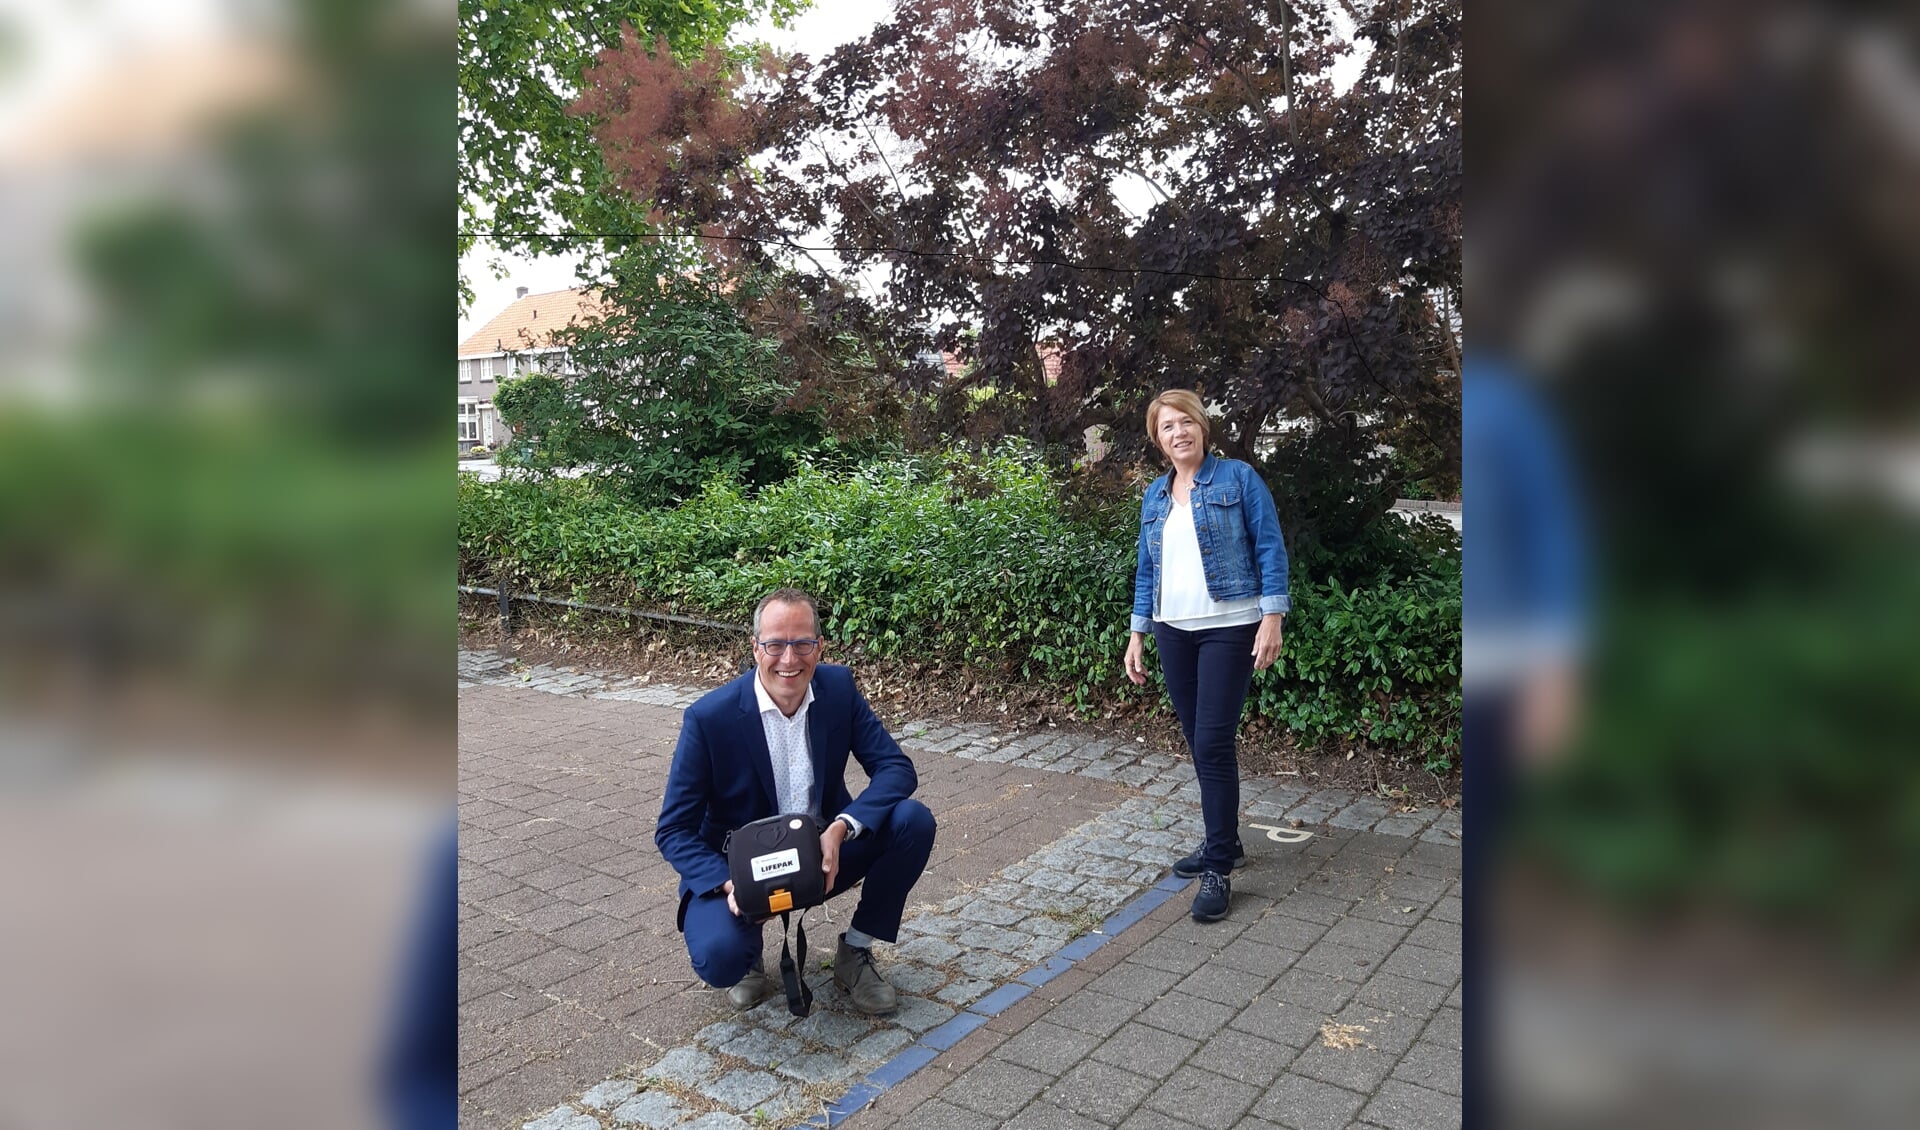 Wethouder Harke Dijksterhuis met een AED in zijn handen, naast hem staat Rietha Dasselaar, voorzitter van de Stichting AED Nijkerk-Hoevelaken.